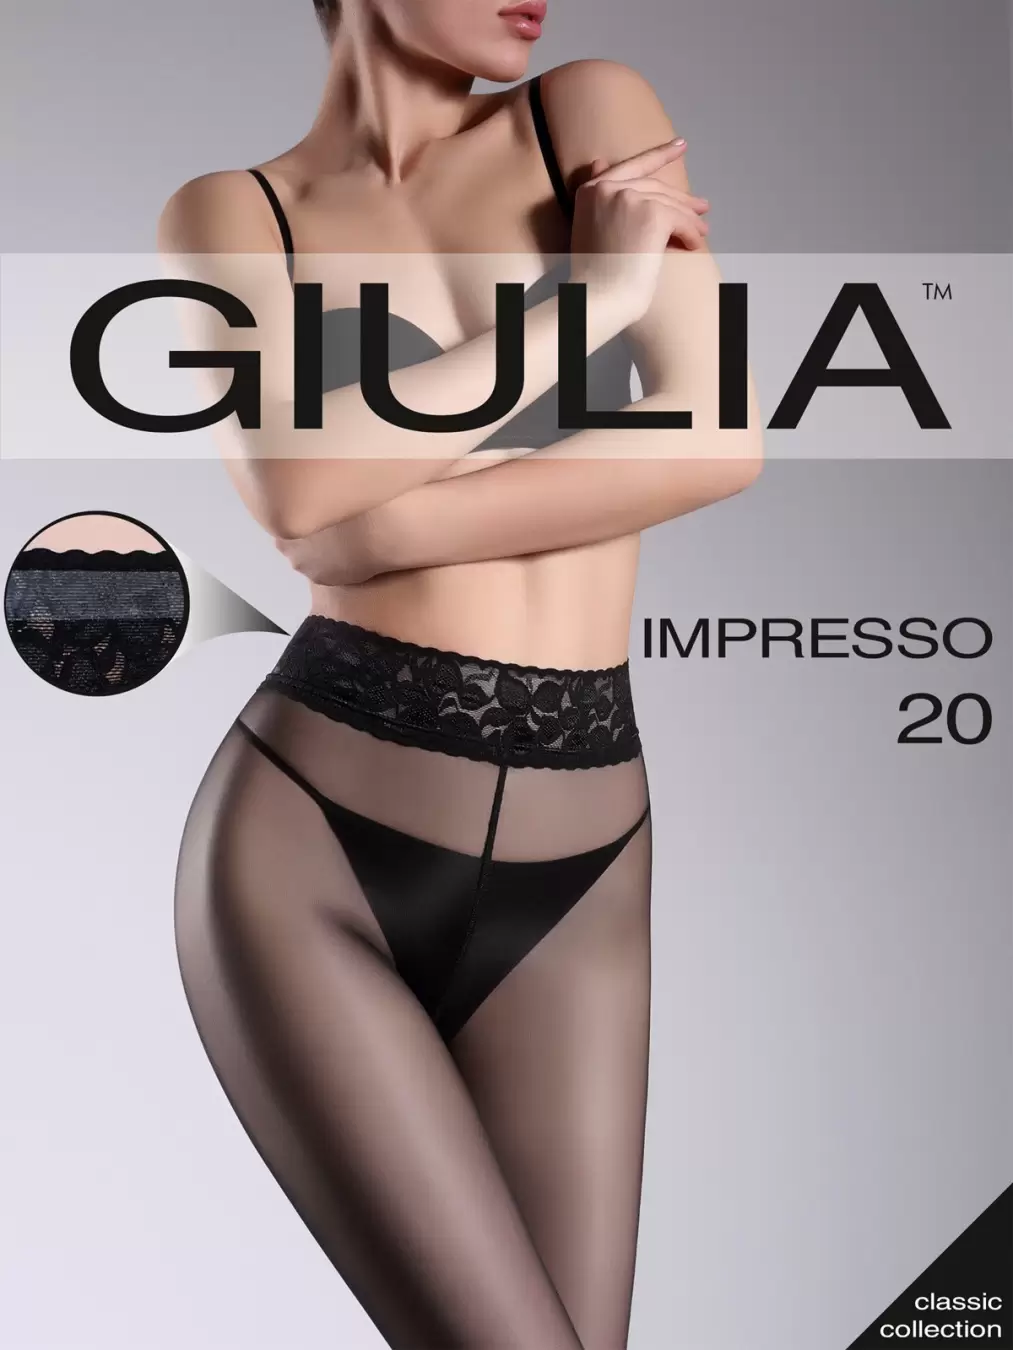 Колготки Giulia impresso 20